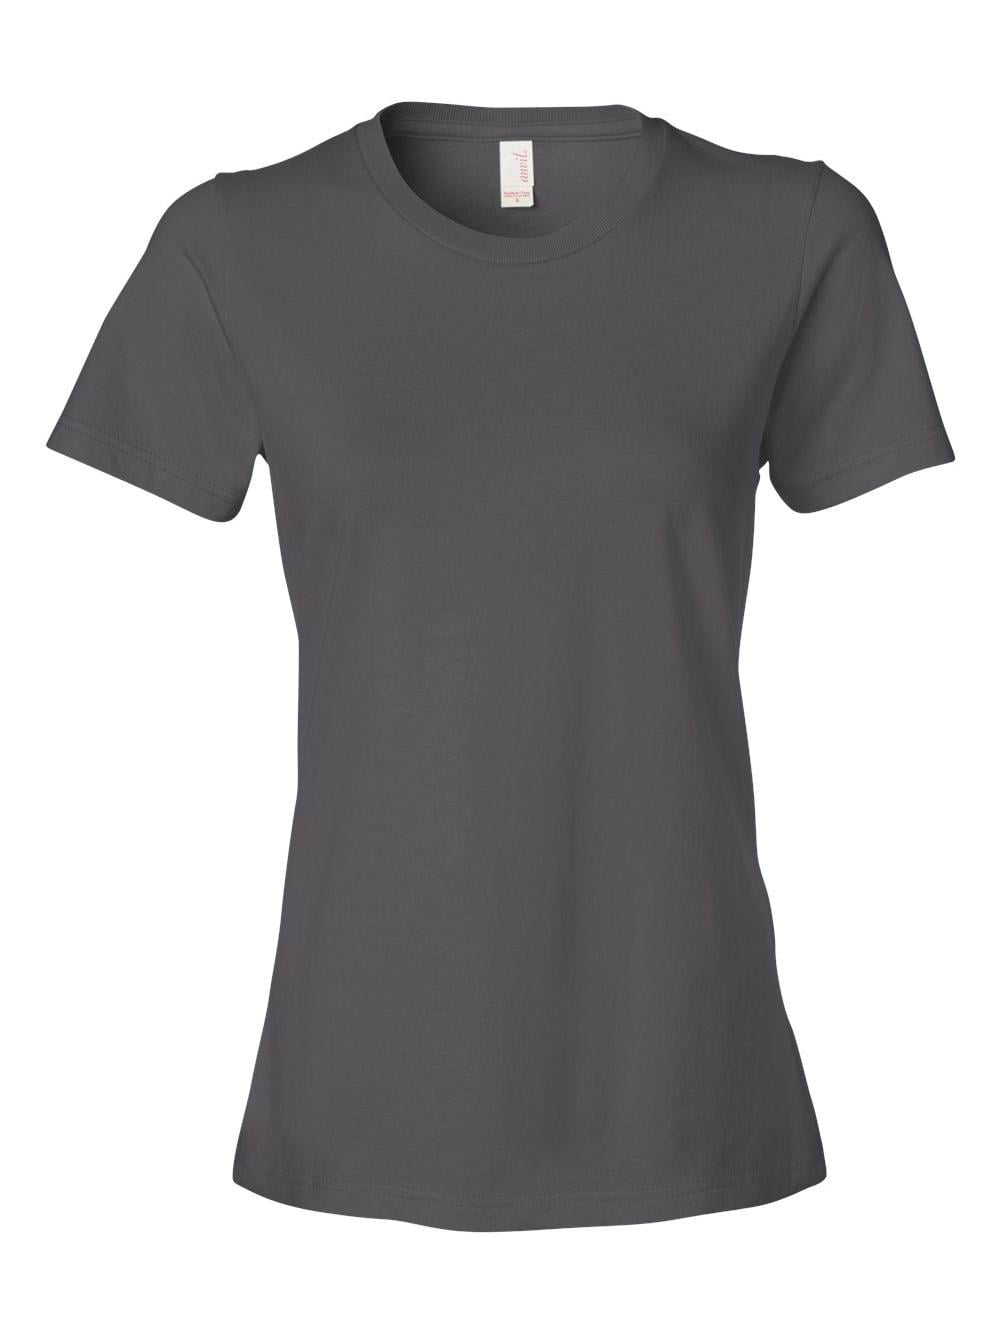 Anvil T-Shirts Women's Lightweight Ringspun T-Shirt - Walmart.com